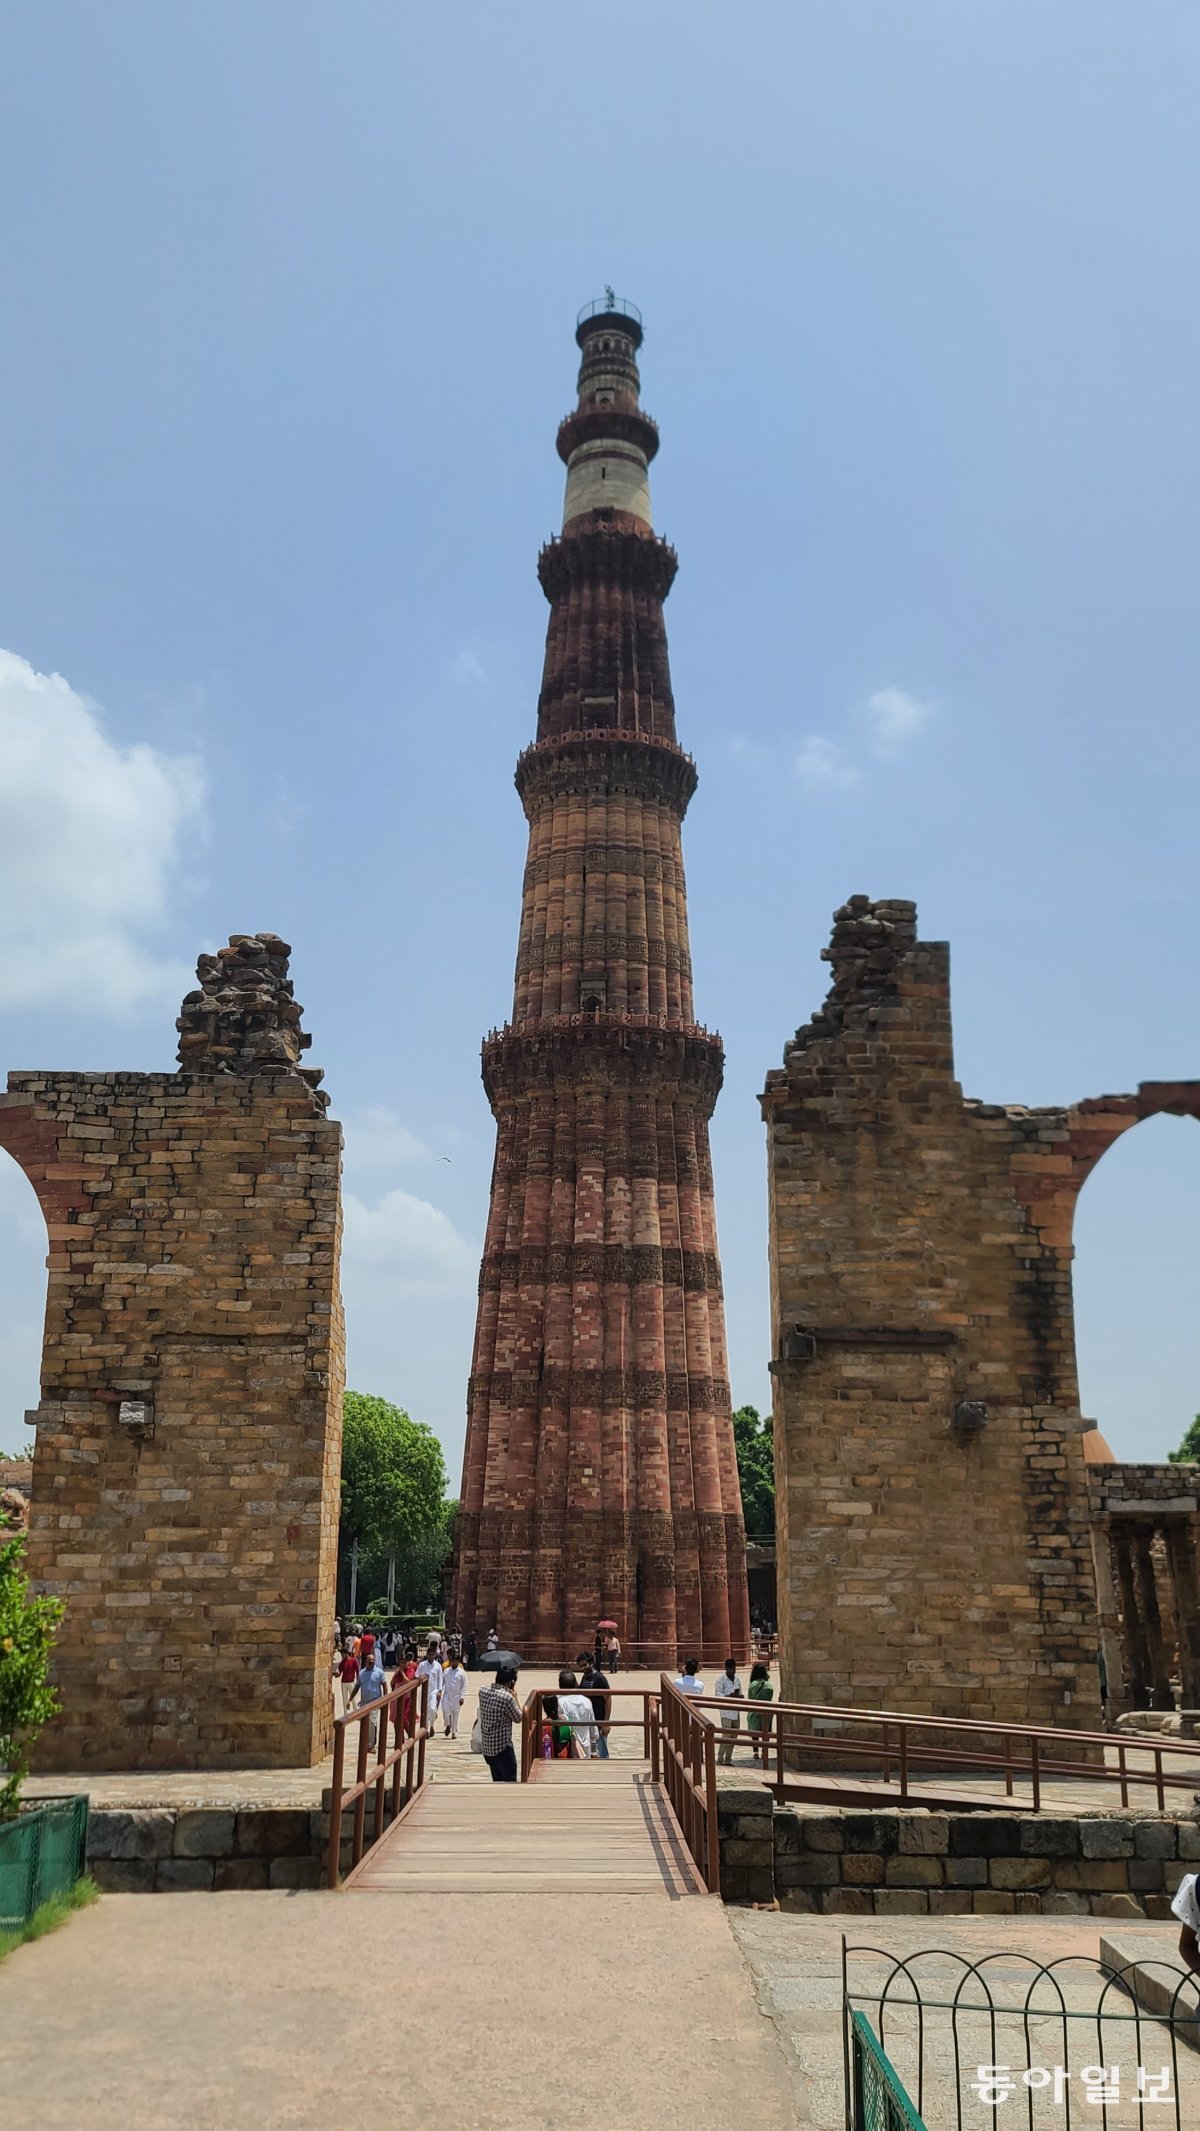 이슬람의 힘을 상징하는 쿠트브미나르.  5층 석탑 구조이며 각 층 사이에는 조그마한 발코니가 설치돼 있다.